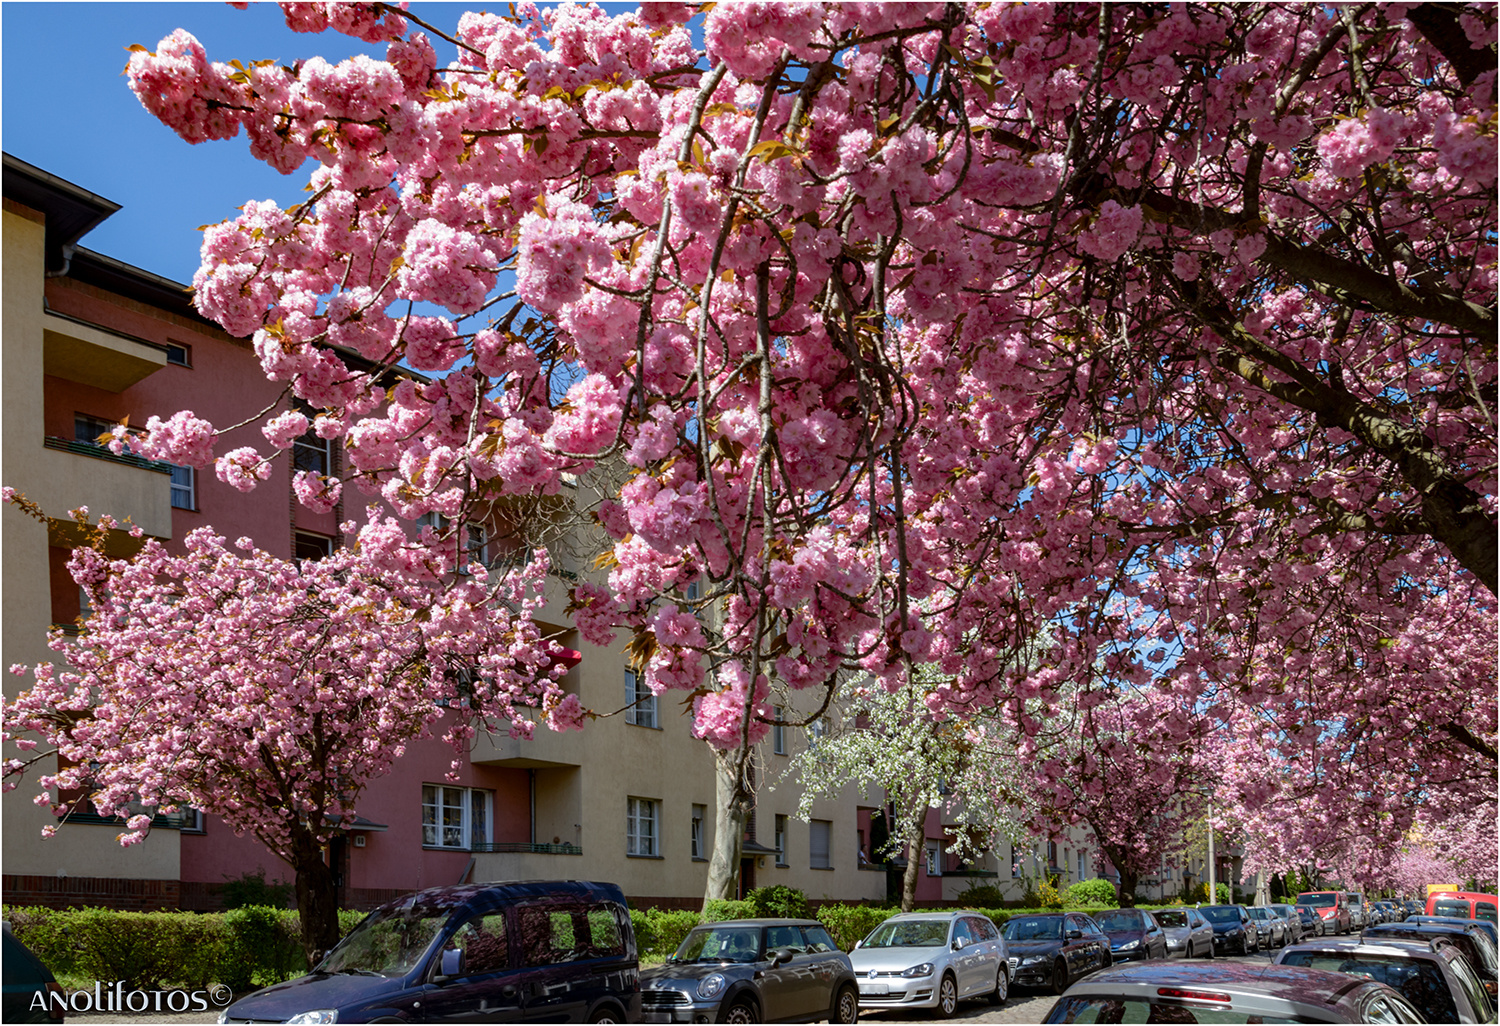 Japanische Kirschblüte in Berlin (2)